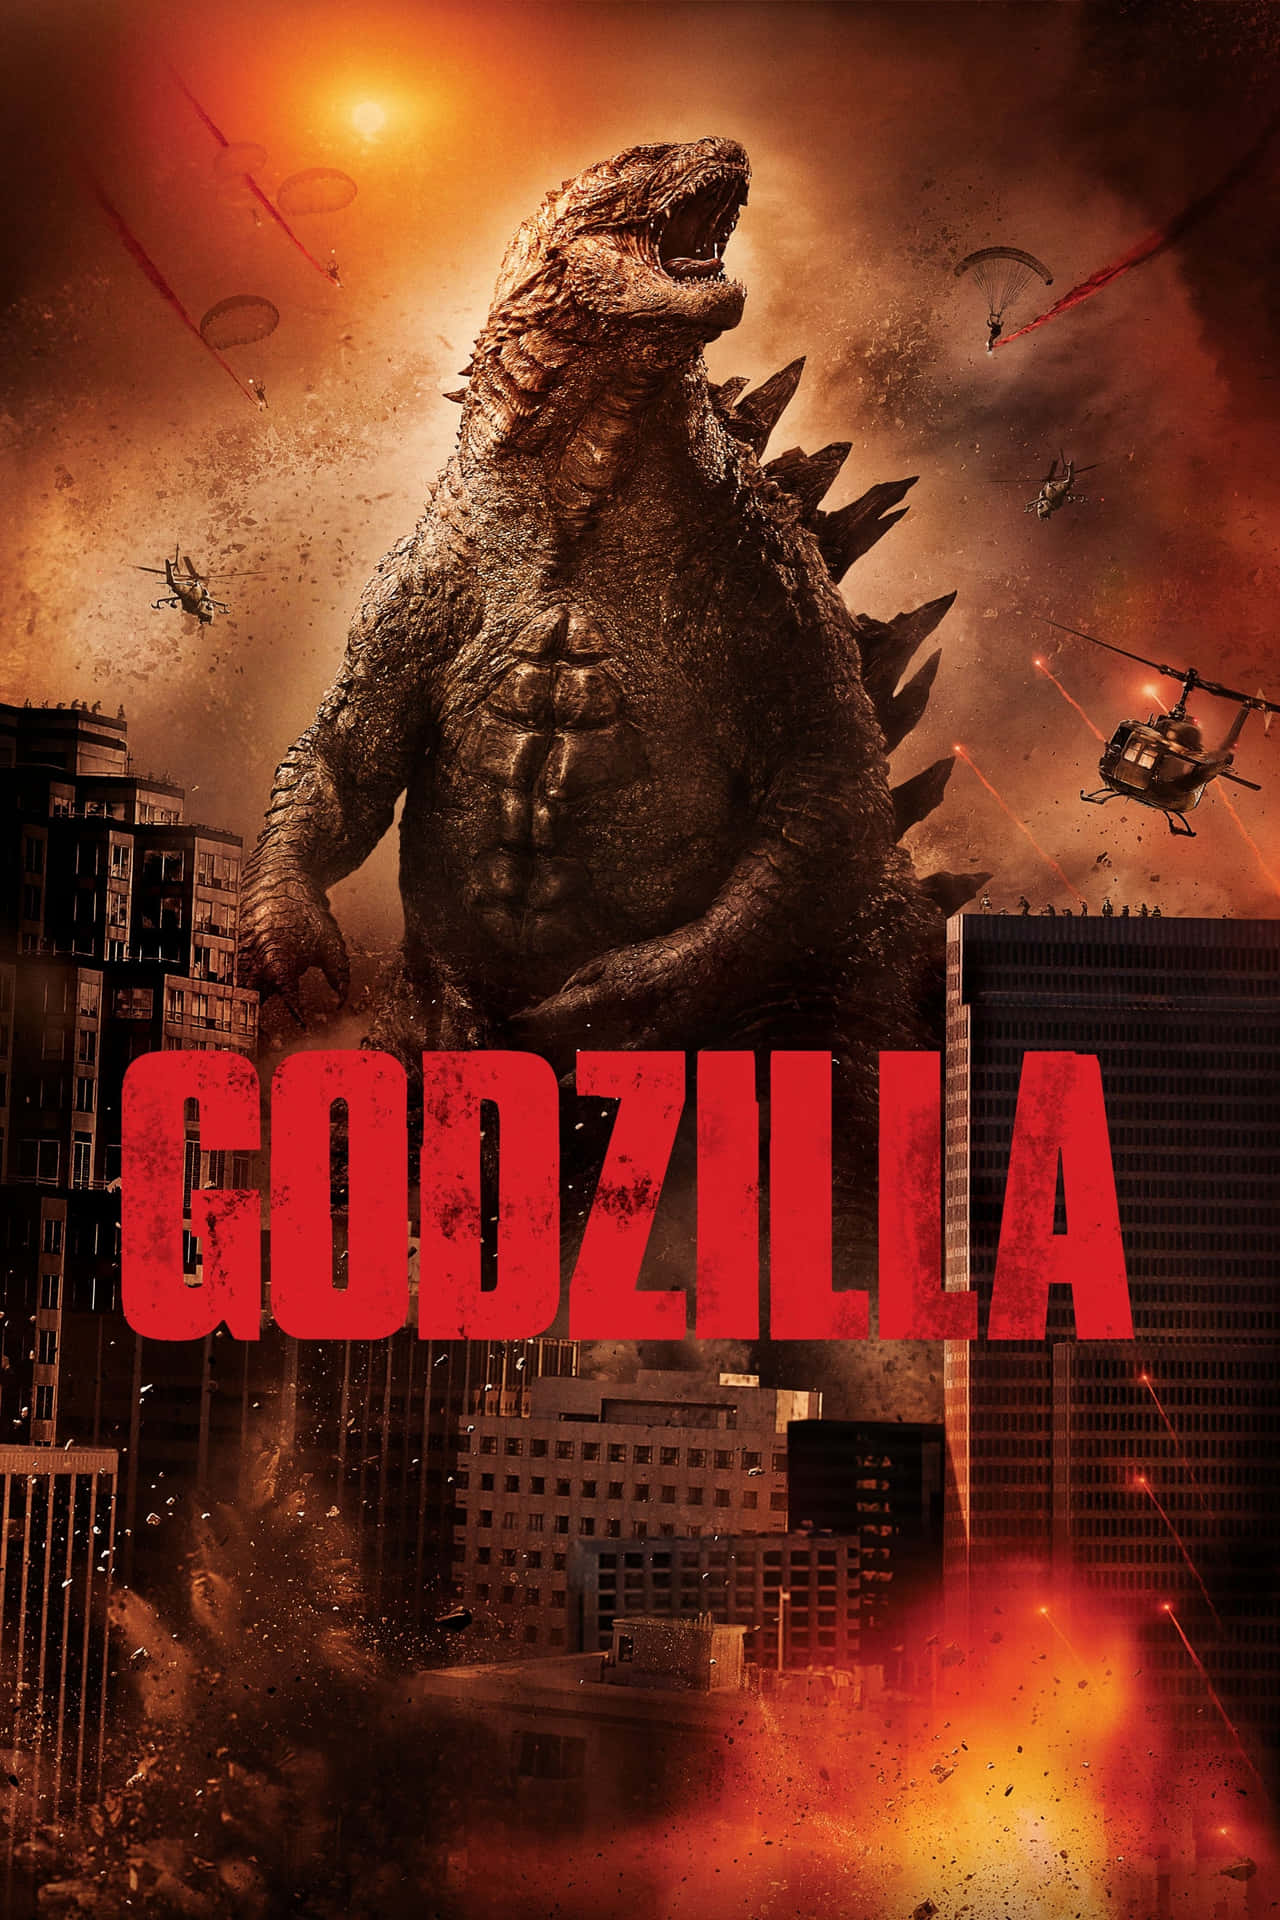 Locandinadel Film Godzilla Con L'immagine Della Città